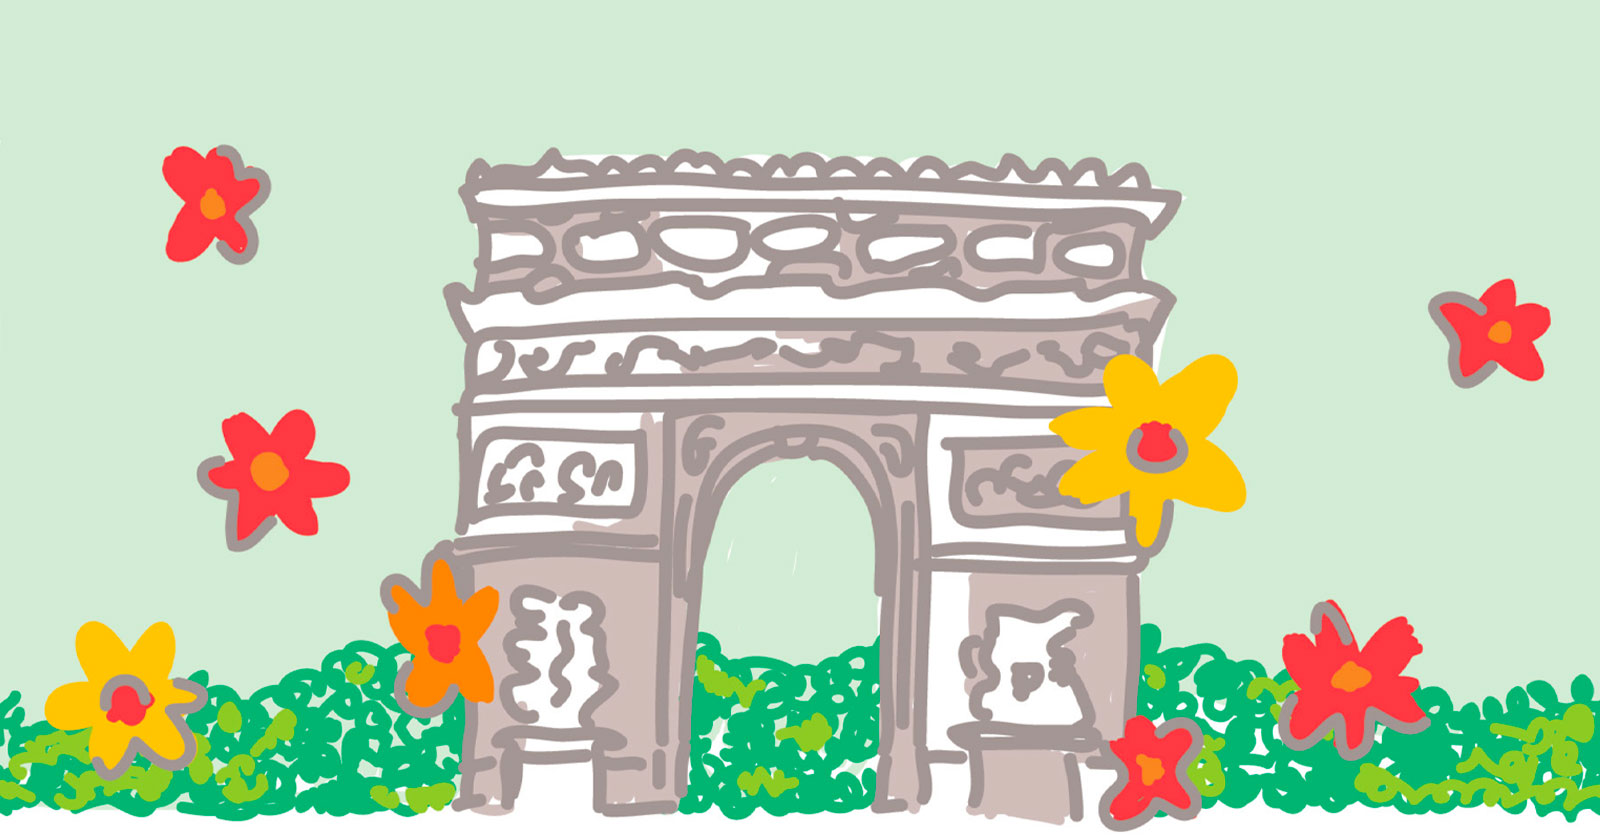 Geïllustreerde Champs-Élysées omgeven door bloemen en groen